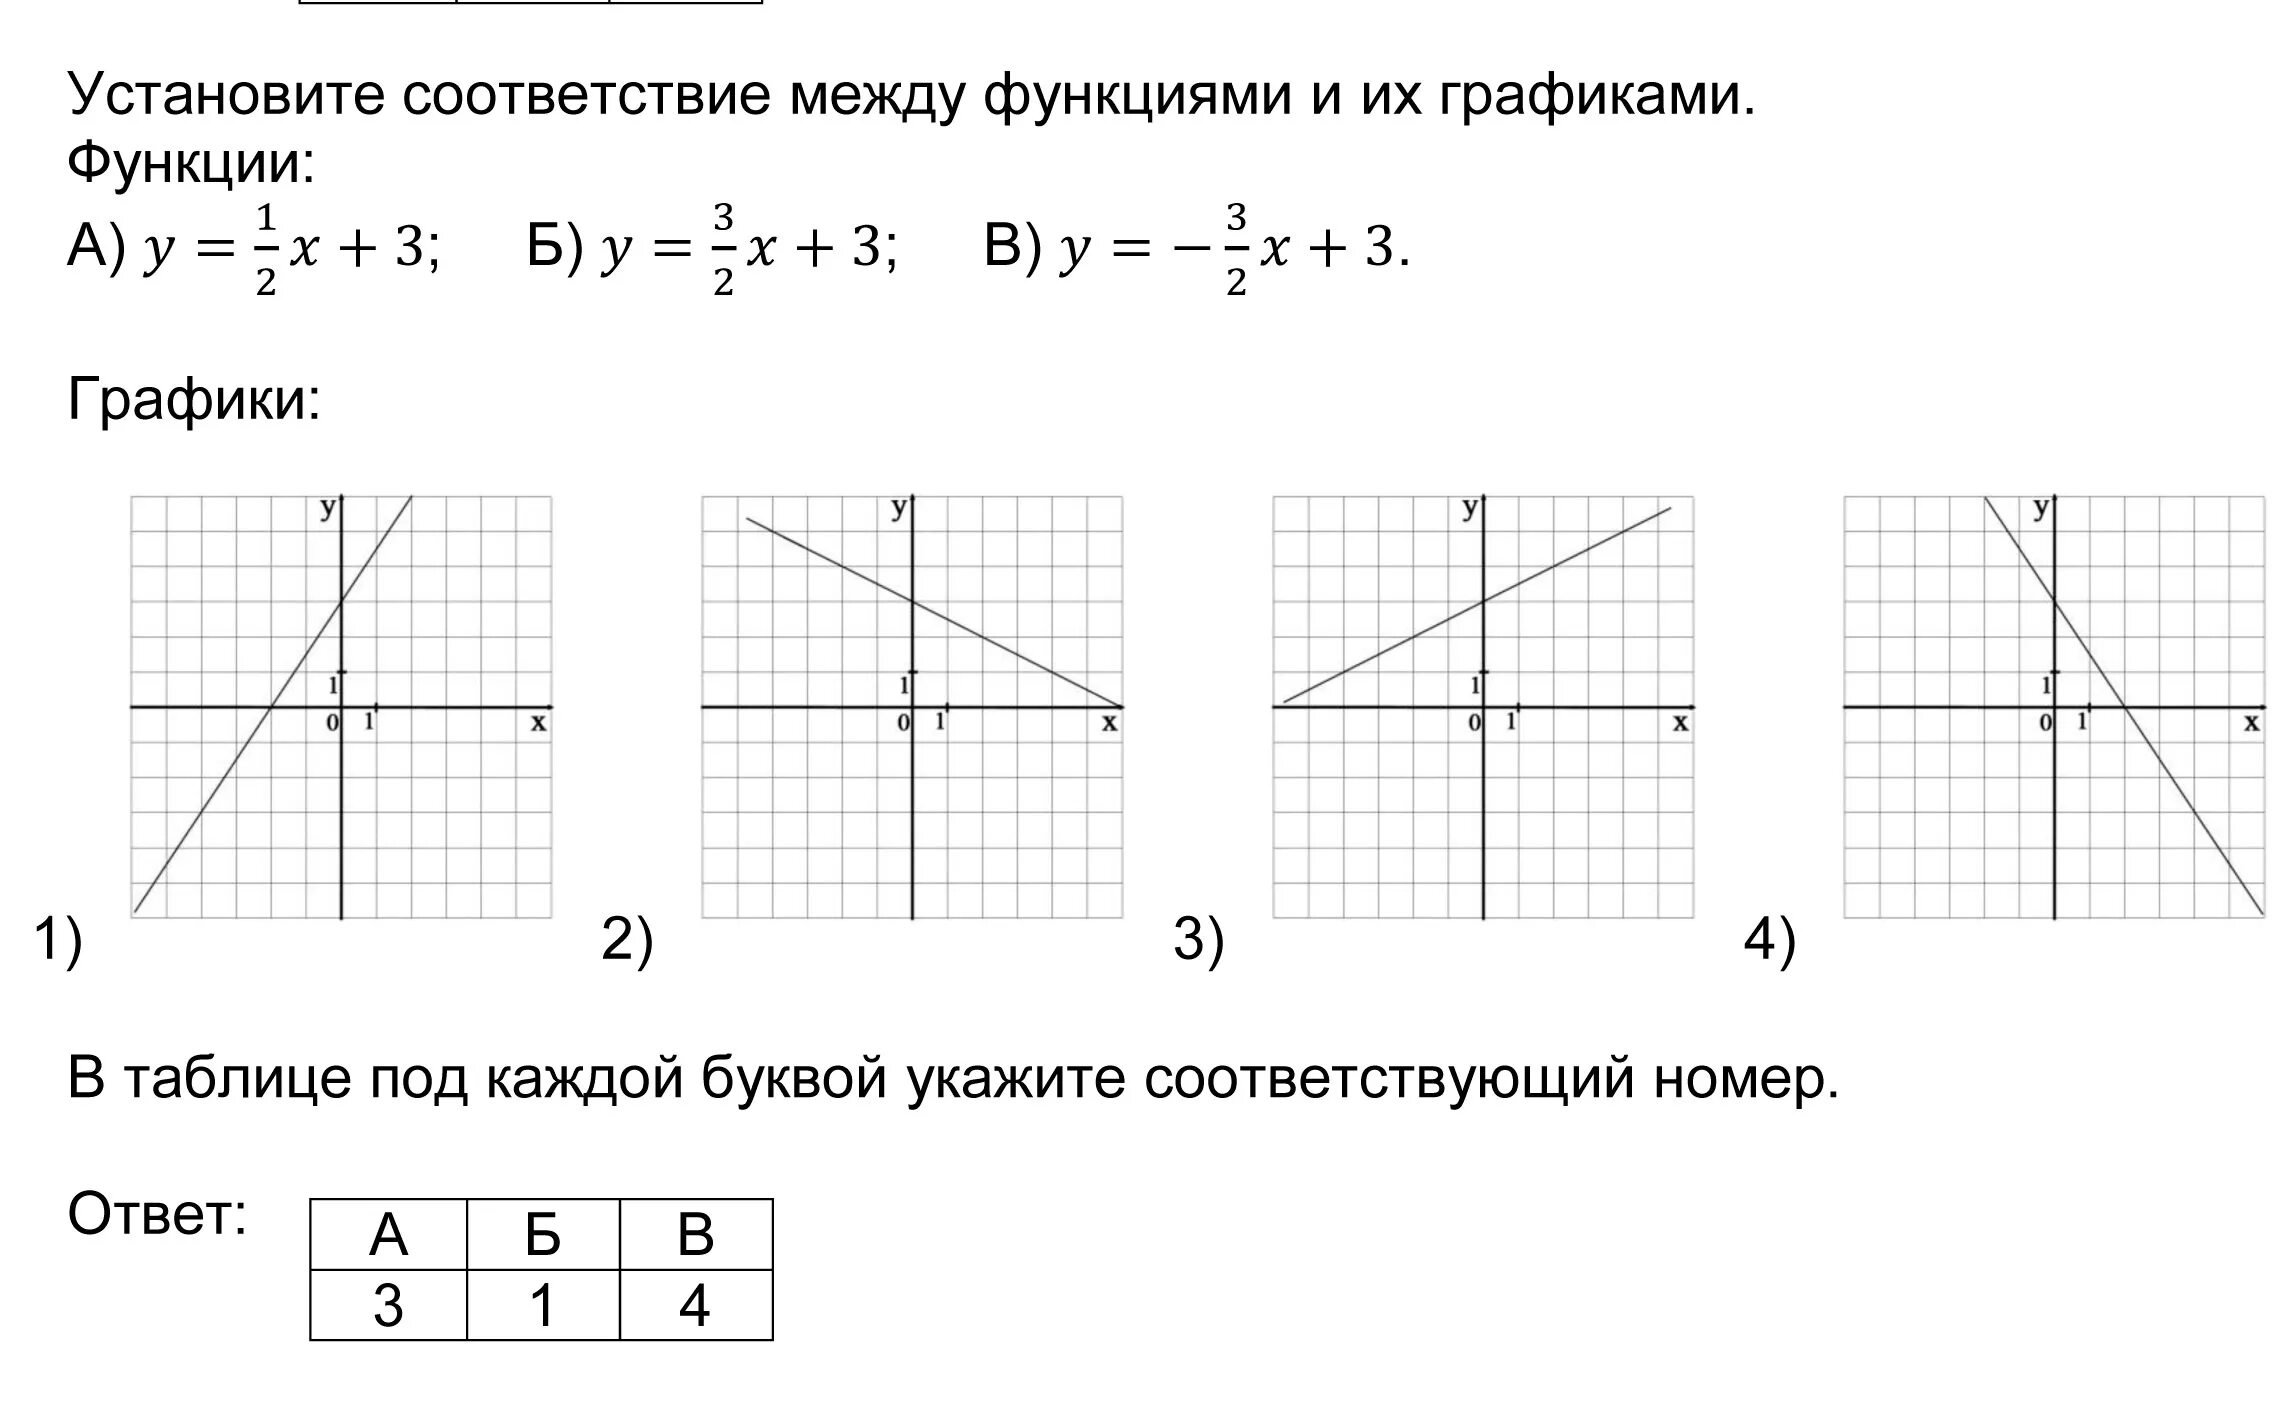 Установить соответствие между функцией и графиком y=-x+2. Установите соответствие между функциями и их графиками у 2 3х-5. Установите соответствие между функциями и их графиками функции. Установите соответствие между функциями и их графиками y x2-2x y x2+2x. Функция формулой у 3х 4